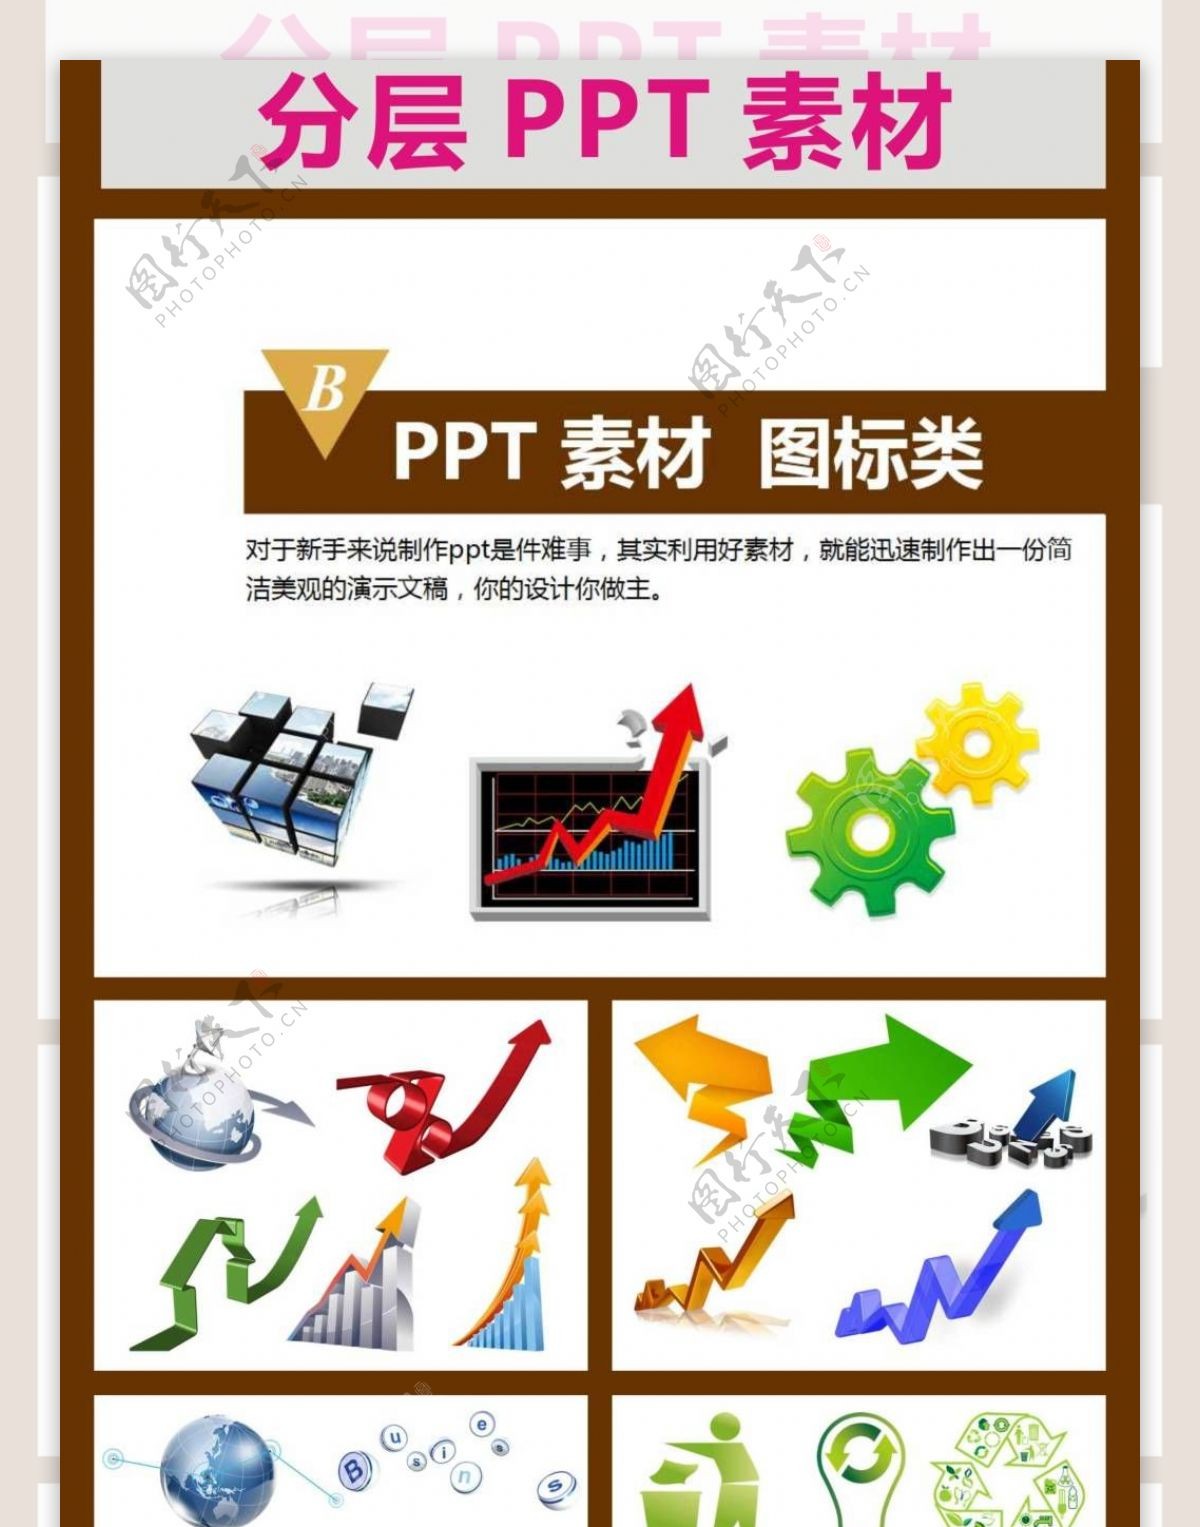 PPT常用图标标志标识素材PPT时尚素材